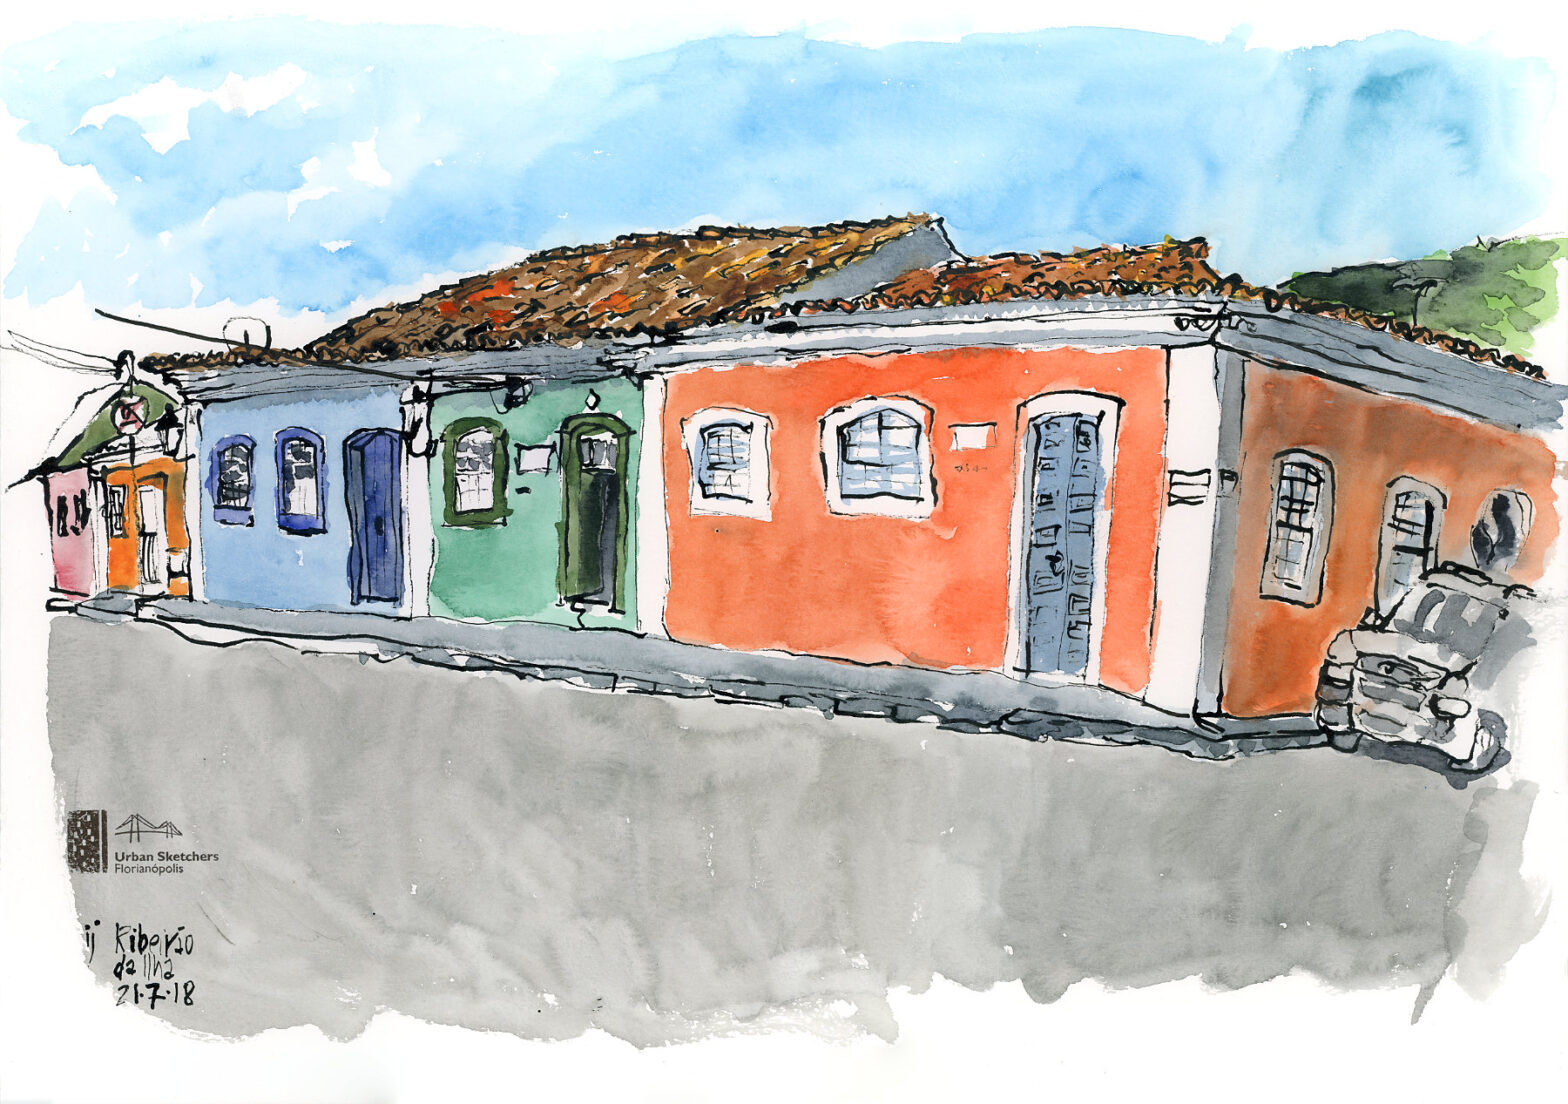 Desenho a lápis mostrando uma sequência de cinco casas de arquitetura açoriana, todas em cores diferentes. À direita, um carro cinza estacionado